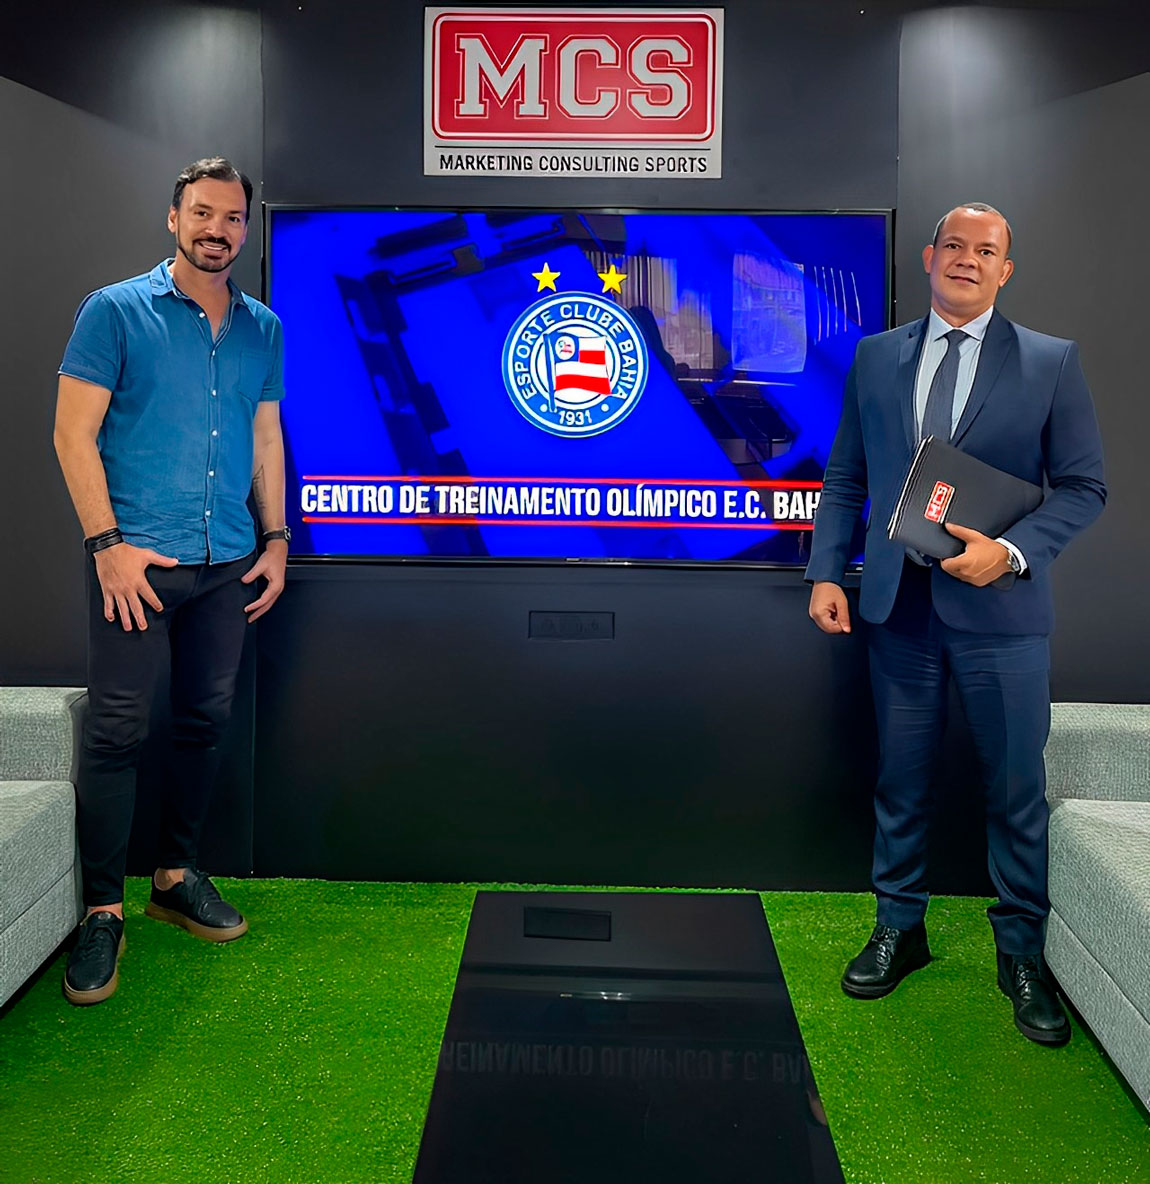 MCS será a agência de marketing esportivo do Esporte Clube Bahia